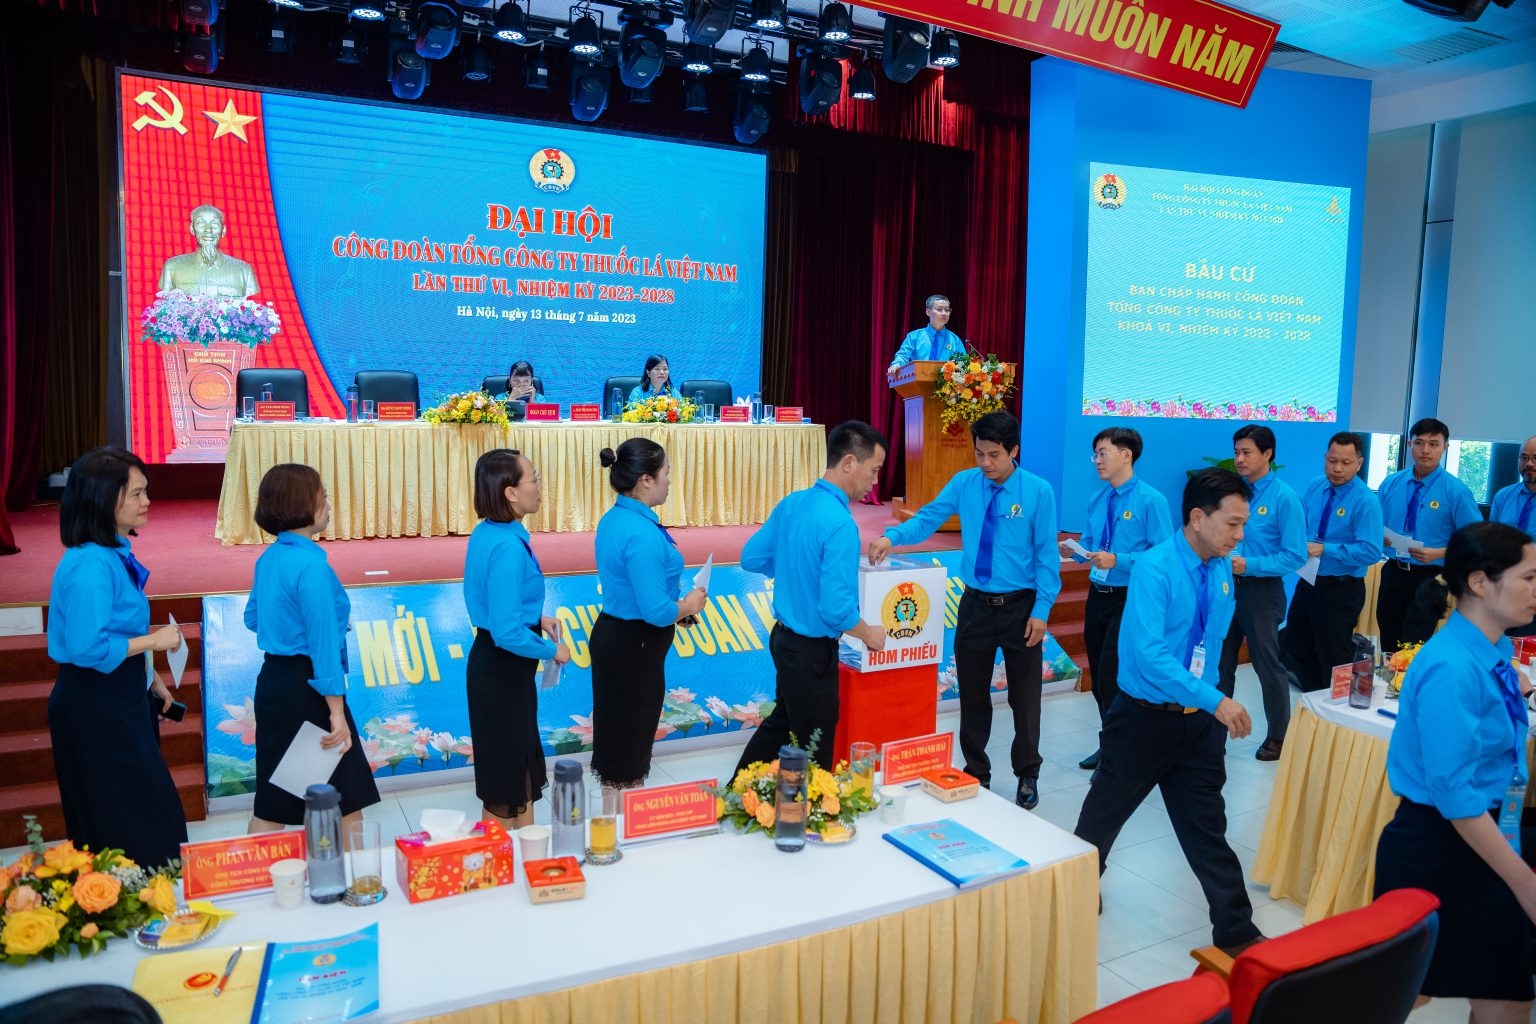 Đồng chí Hồ Kỳ Quốc Hùng tái đắc cử tái đắc cử Chủ tịch Công đoàn Tổng công ty Thuốc lá Việt Nam